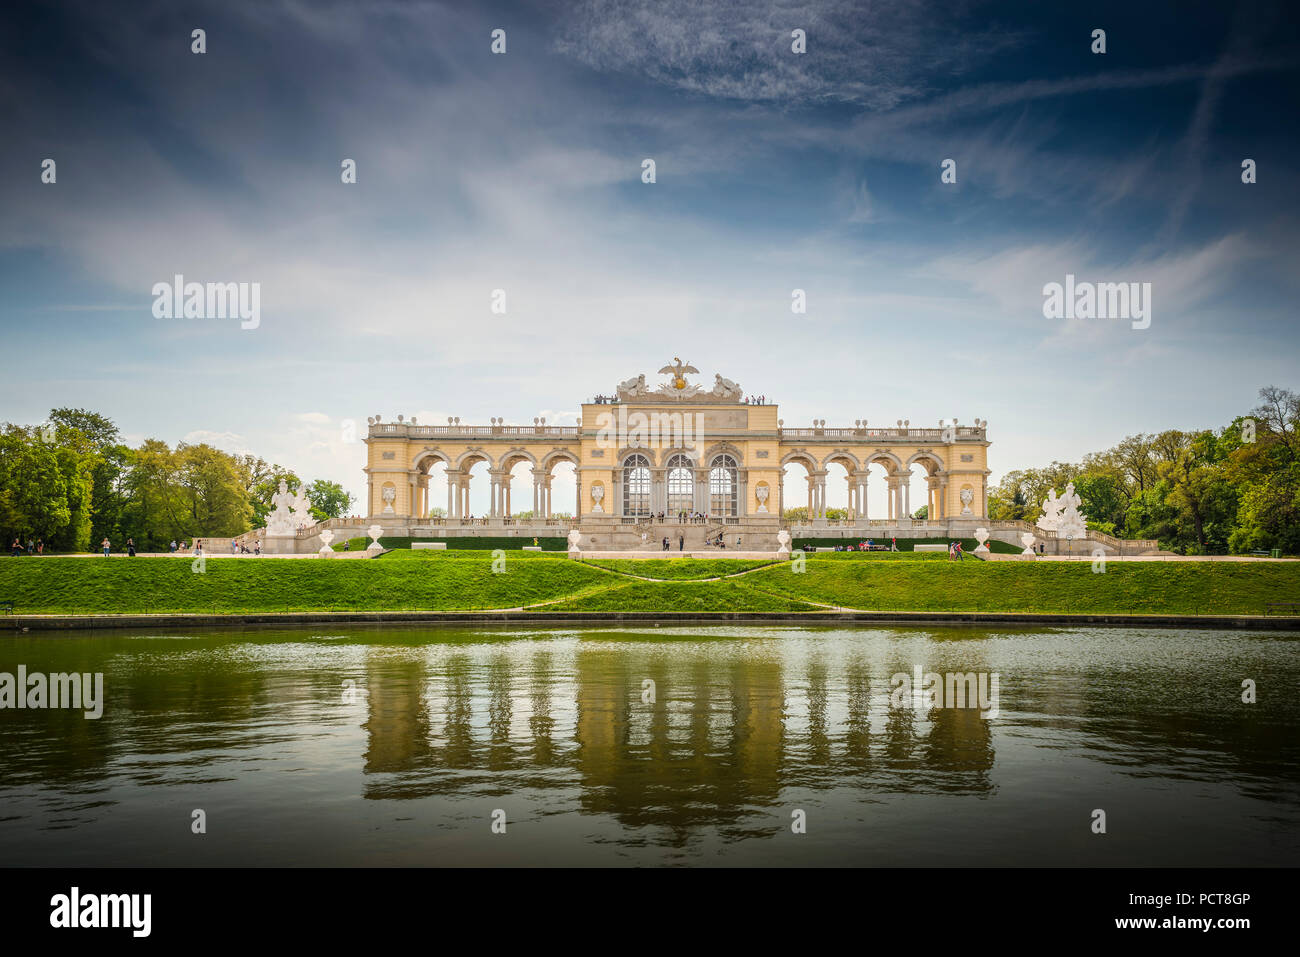 Europa, Österreich, Wien, Schloss, Palast, Schönbrunn, Gloriete, Schlosspark, Vienna, Austria, architettura, capitale Foto Stock